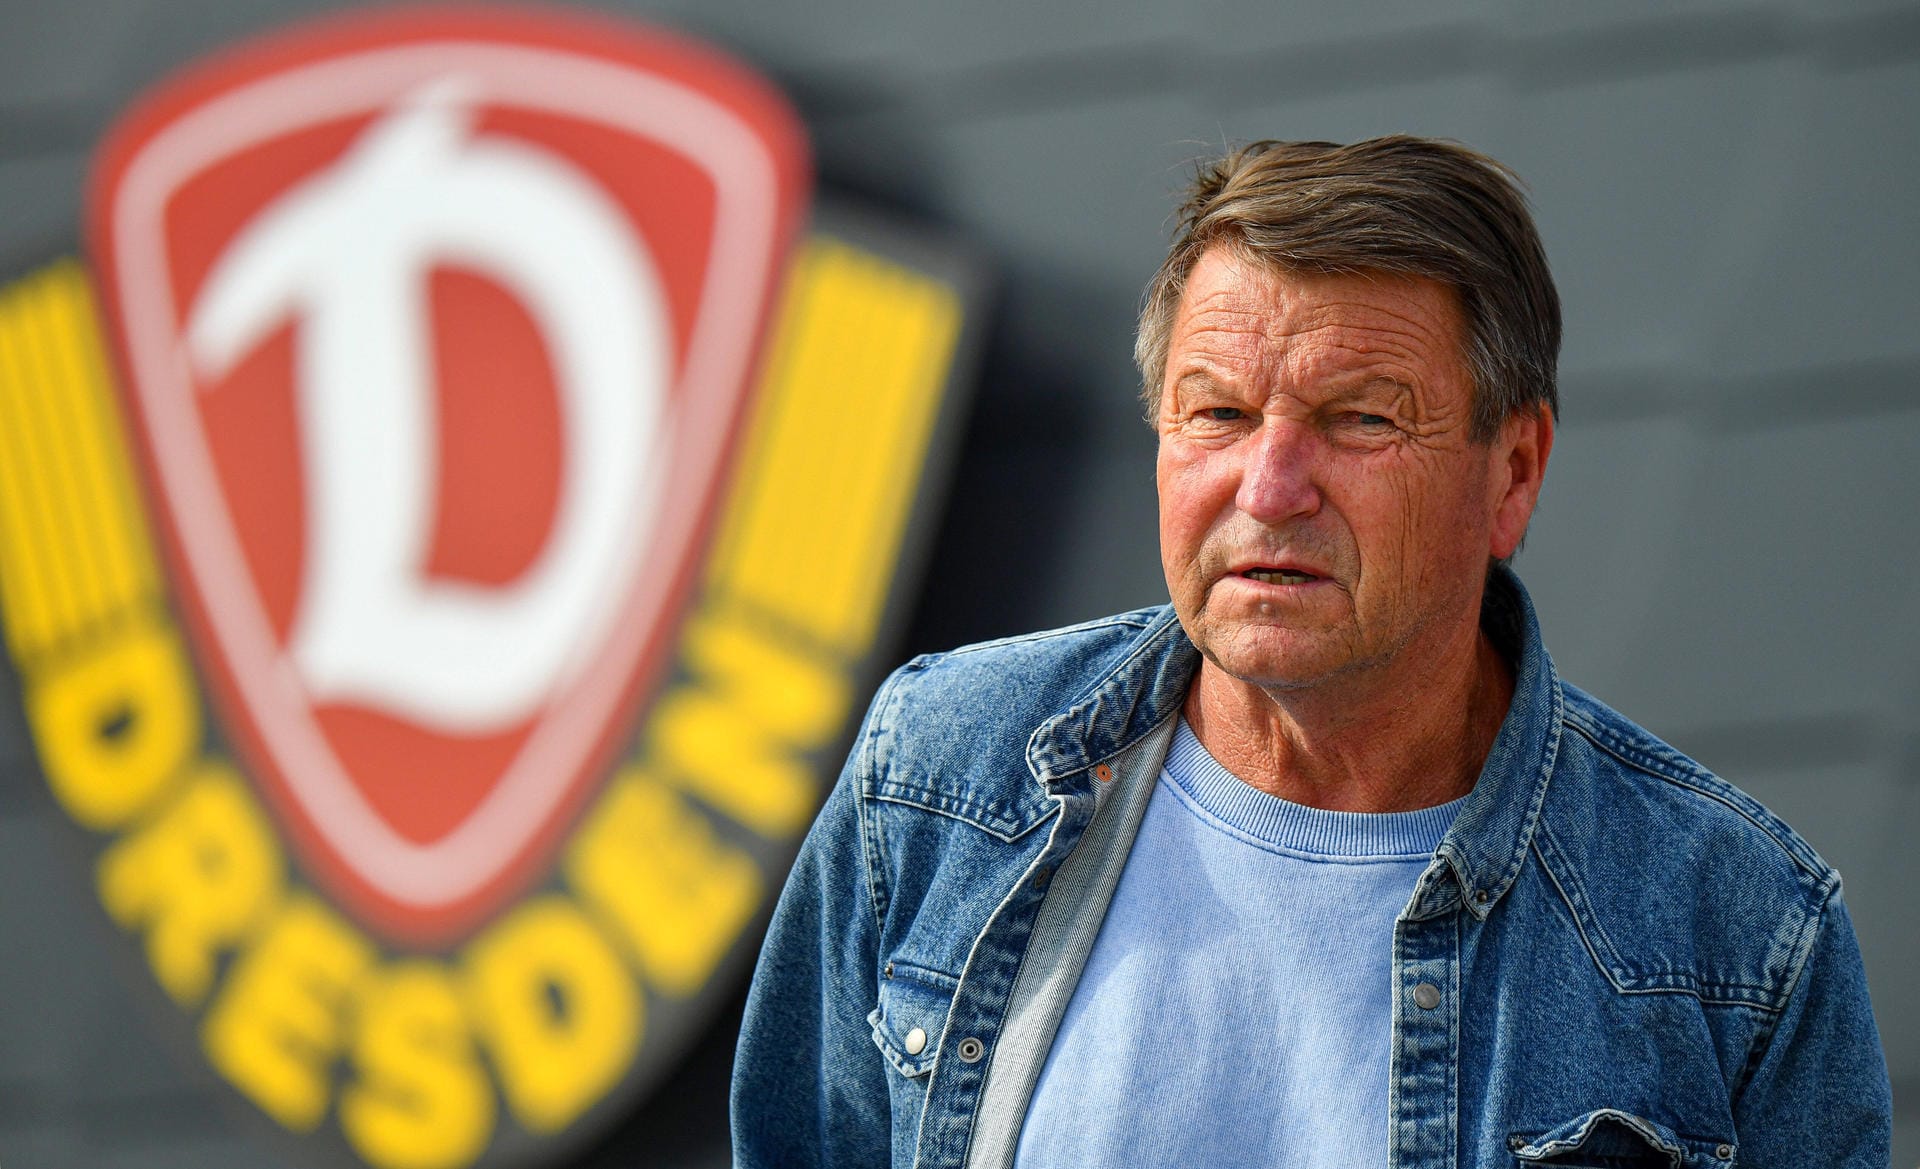 Hans-Jürgen Dörner: Sein Spitzname war "Dixie". Die DDR-Fußball-Legende ist im Alter von 70 Jahren nach schwerer Krankheit gestorben, hier im Jahr 2020 zu sehen. Dörner hatte eine mehr als erfolgreiche Karriere.